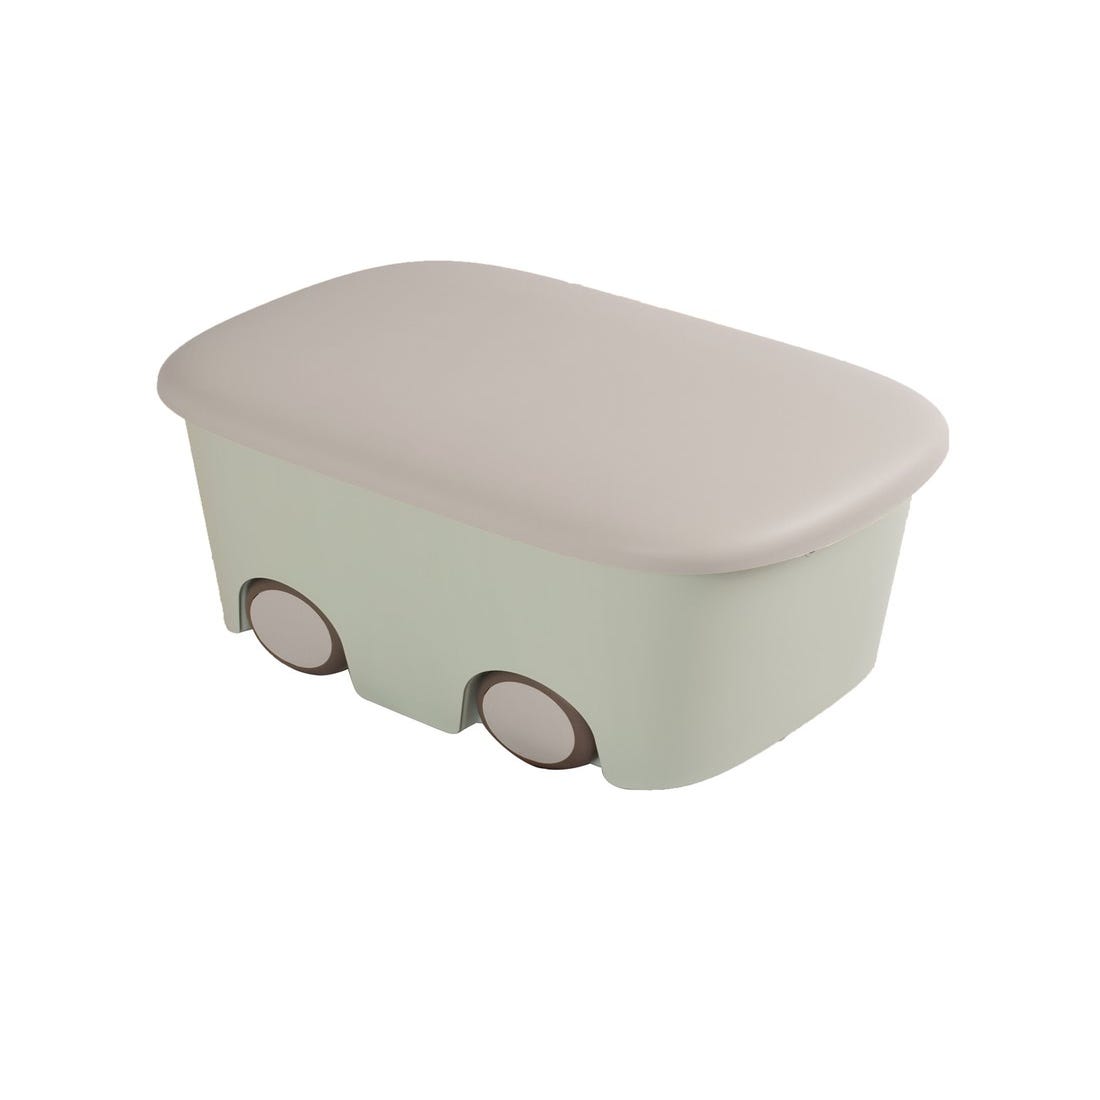 Cajas de Almacenaje Transparentes – Cajas Organizadoras de Plástico con  Tapa, Pack 6 uds (Verde Claro 45L)